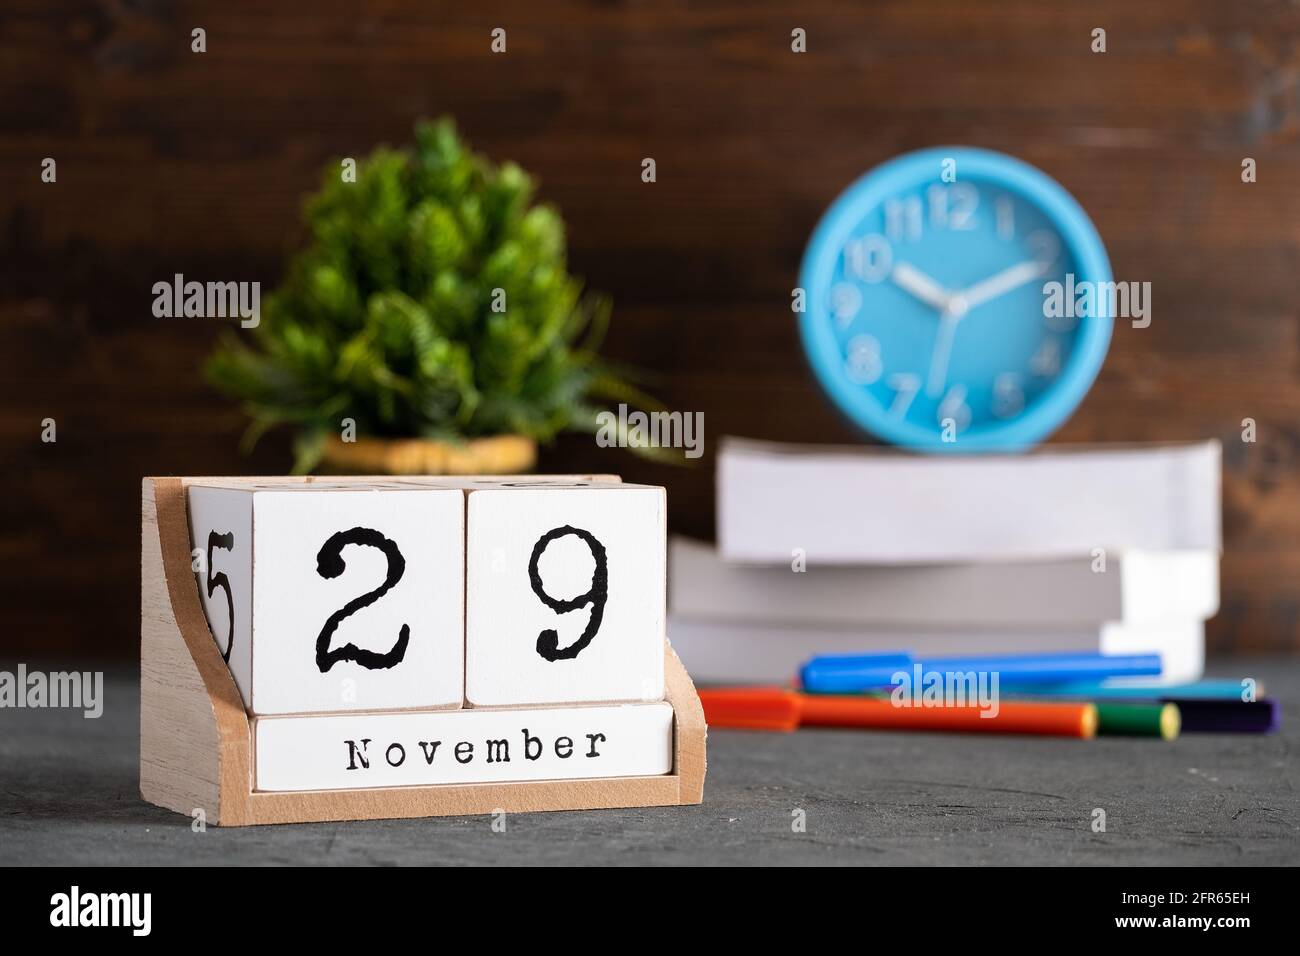 29 novembre. Calendrier cubique en bois de novembre 29 avec objets flous sur fond. Banque D'Images